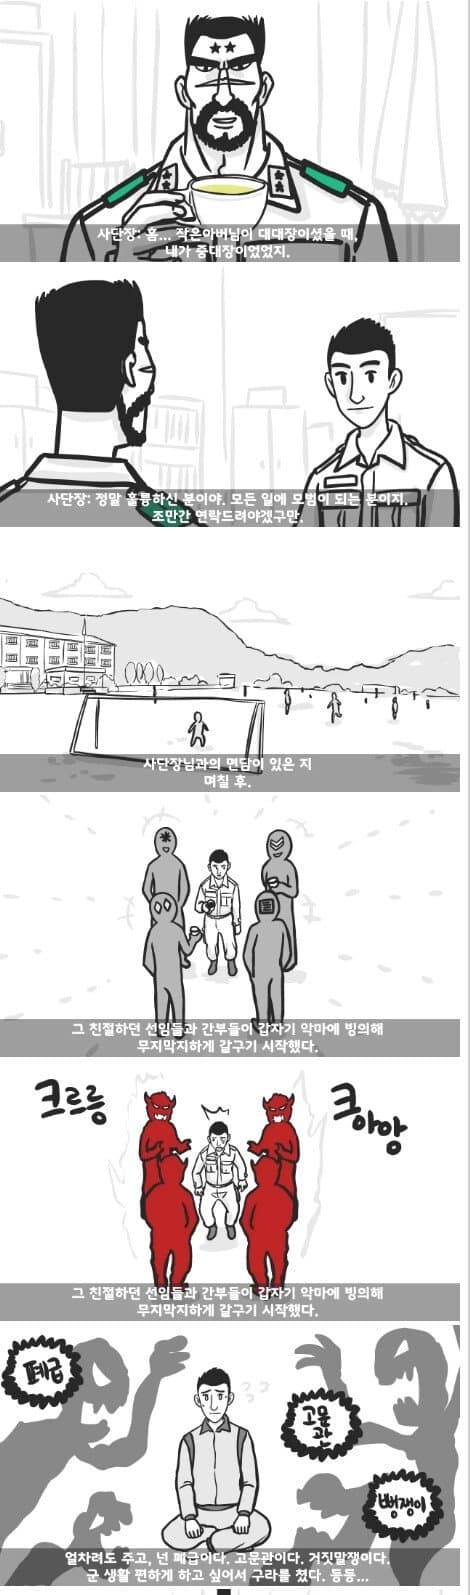 군대 4스타인 만화 5.jpg